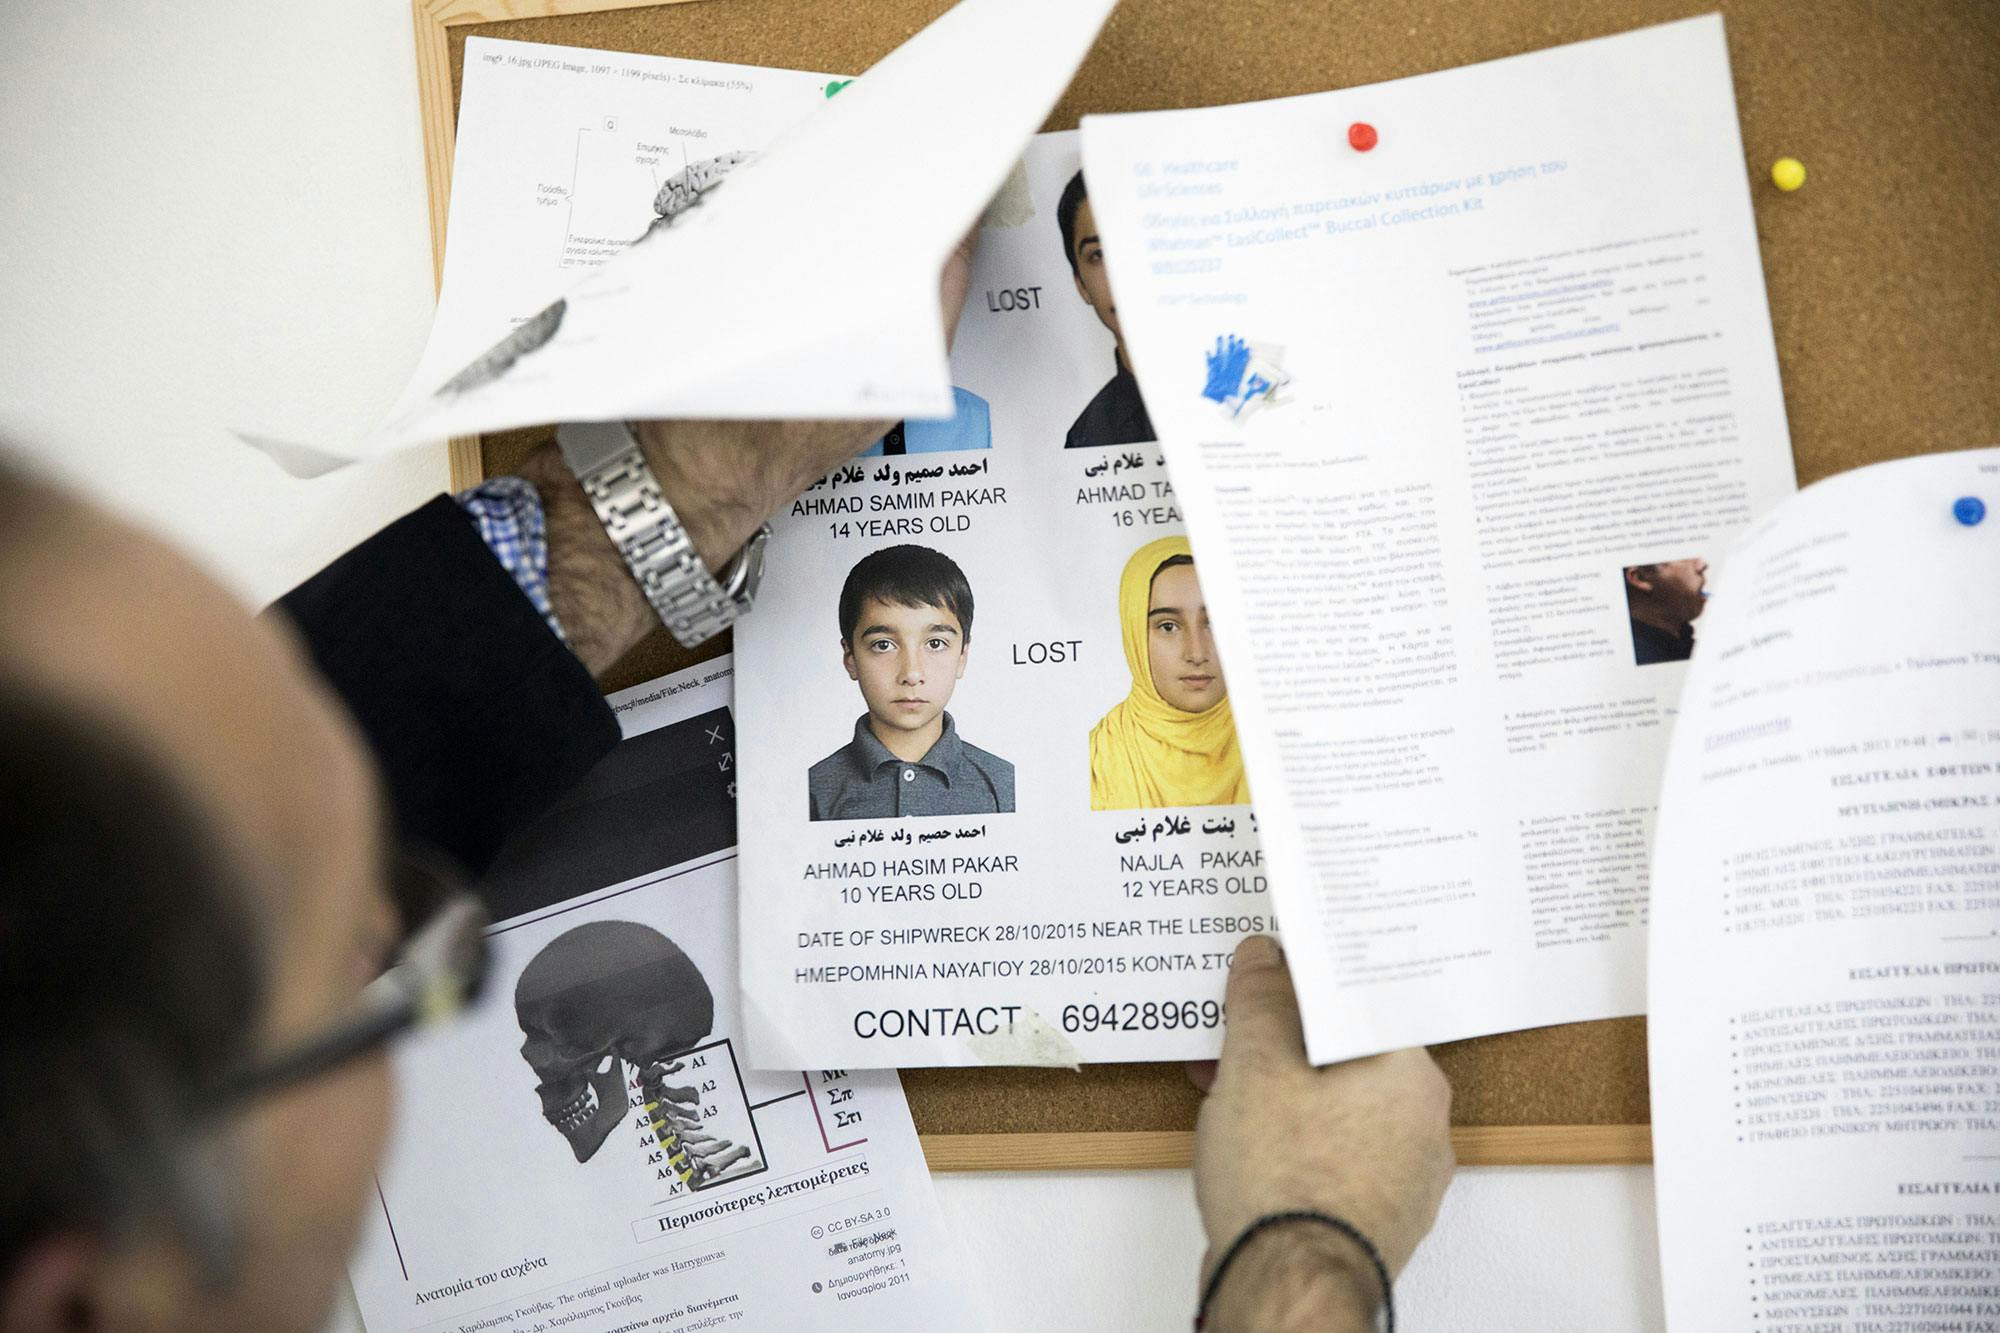 Avis de recherche de 4 jeunes afghans disparus lors d'un naufrage en 2015